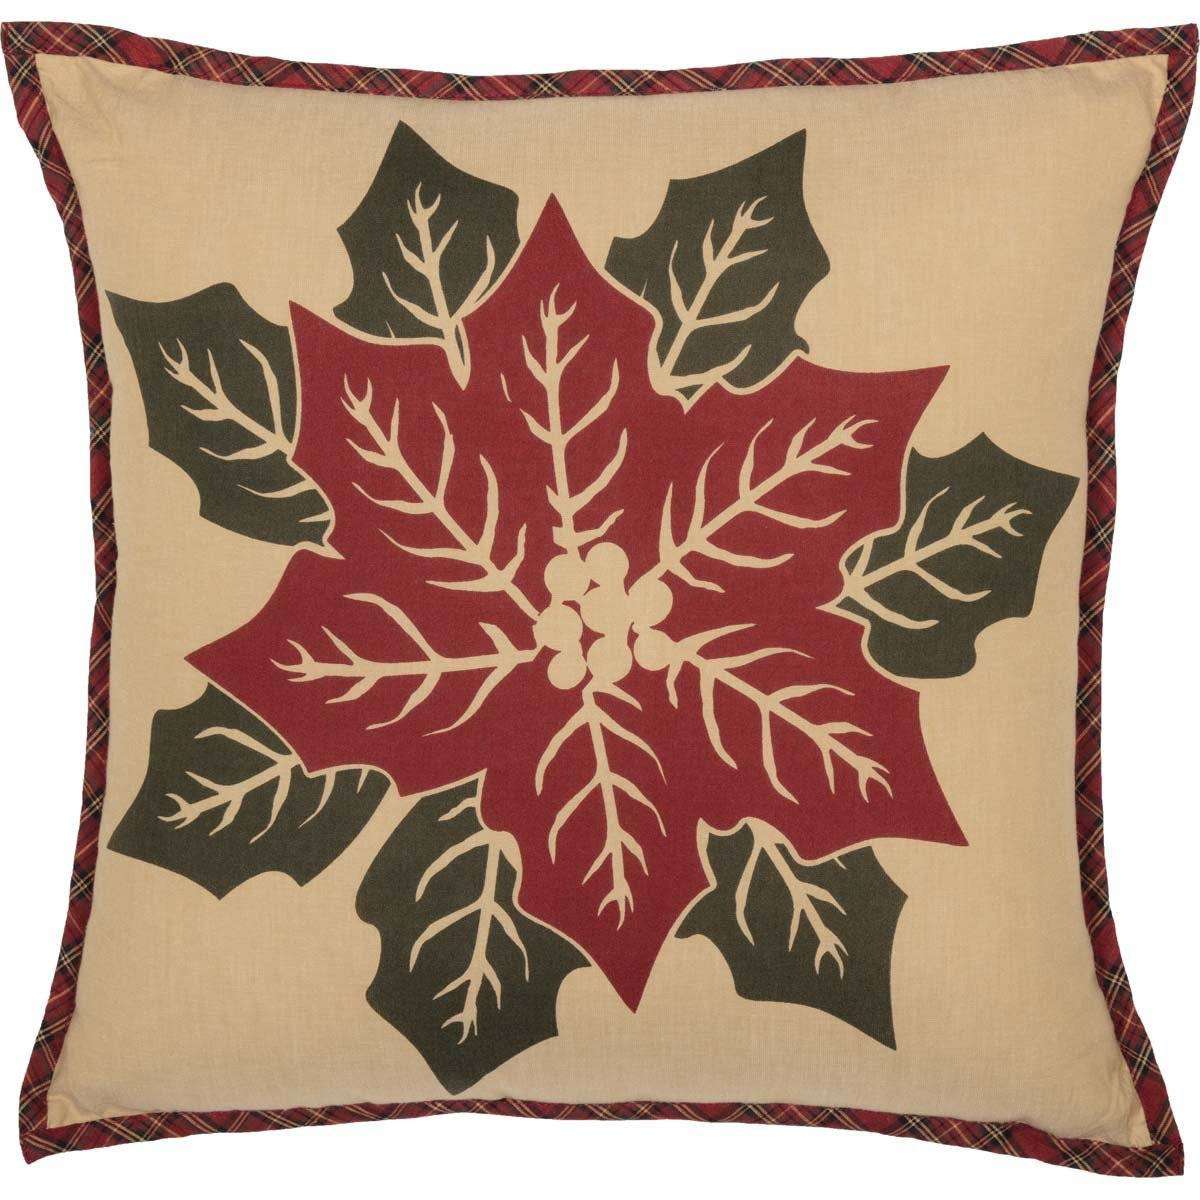 National Quilt Museum Poinsettia Block Pillow 18" Khaki, Poinsettia Red, Deep Green VHC Brands - The Fox Decor